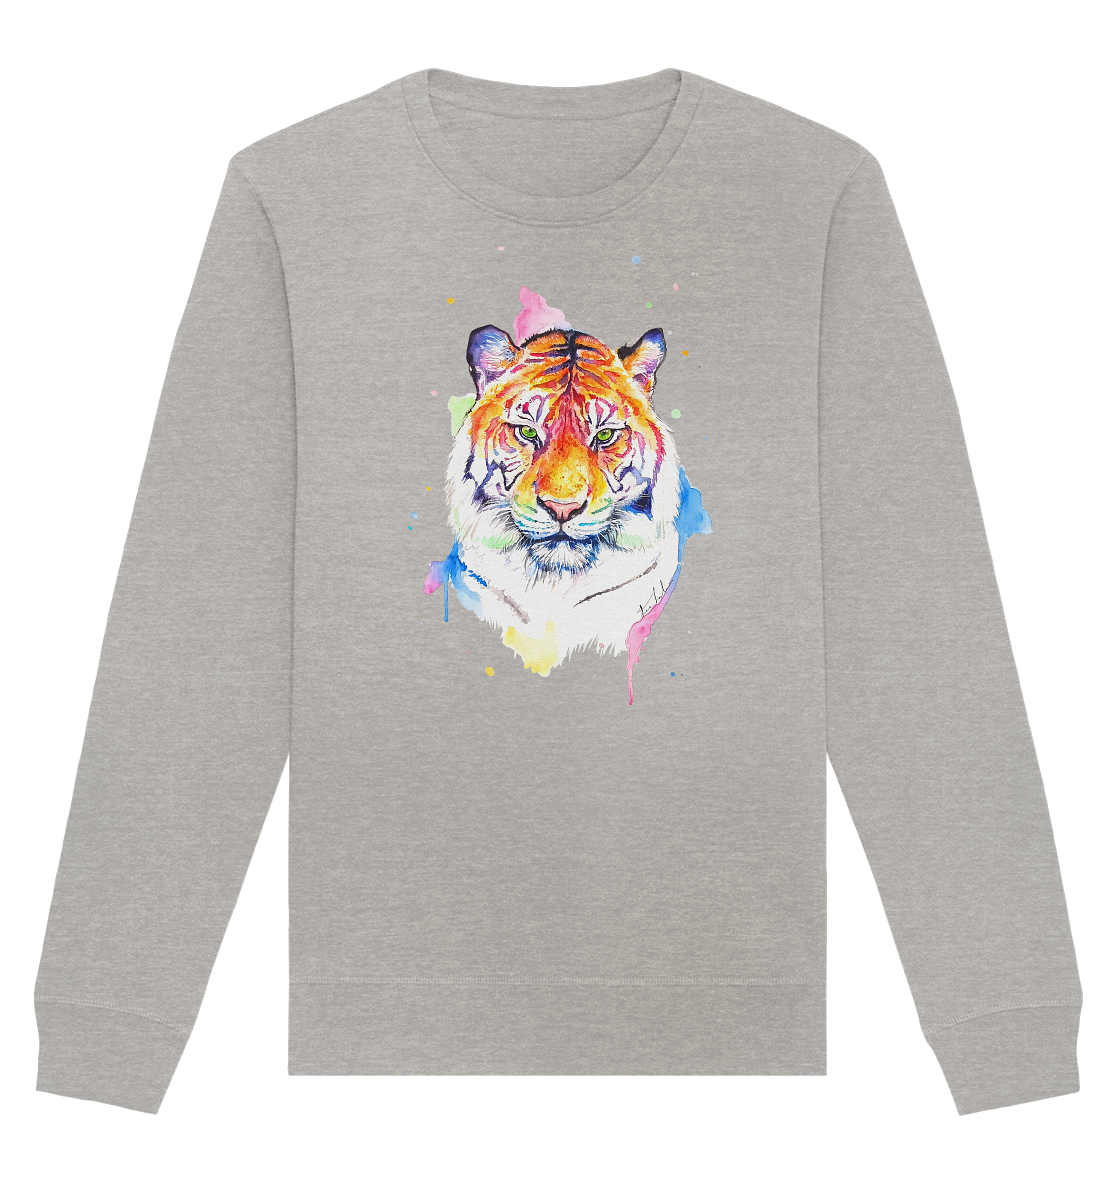 Bunter Tiger - Organic Basic Unisex Sweatshirt